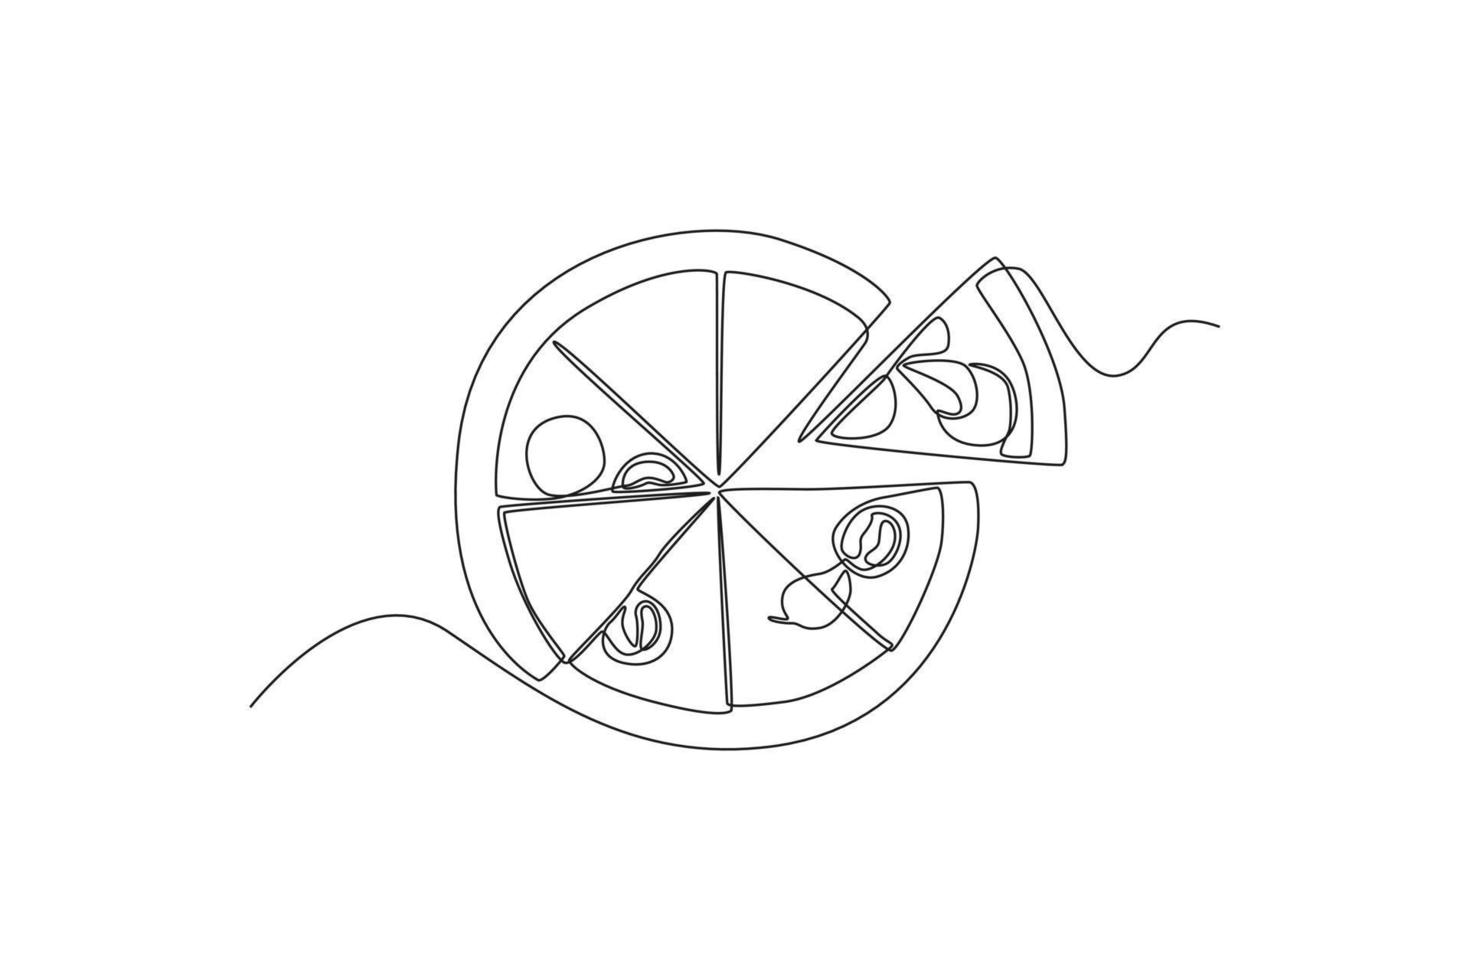 single een lijn tekening plak van heet pizza. wereld voedsel dag concept. doorlopend lijn trek ontwerp grafisch vector illustratie.